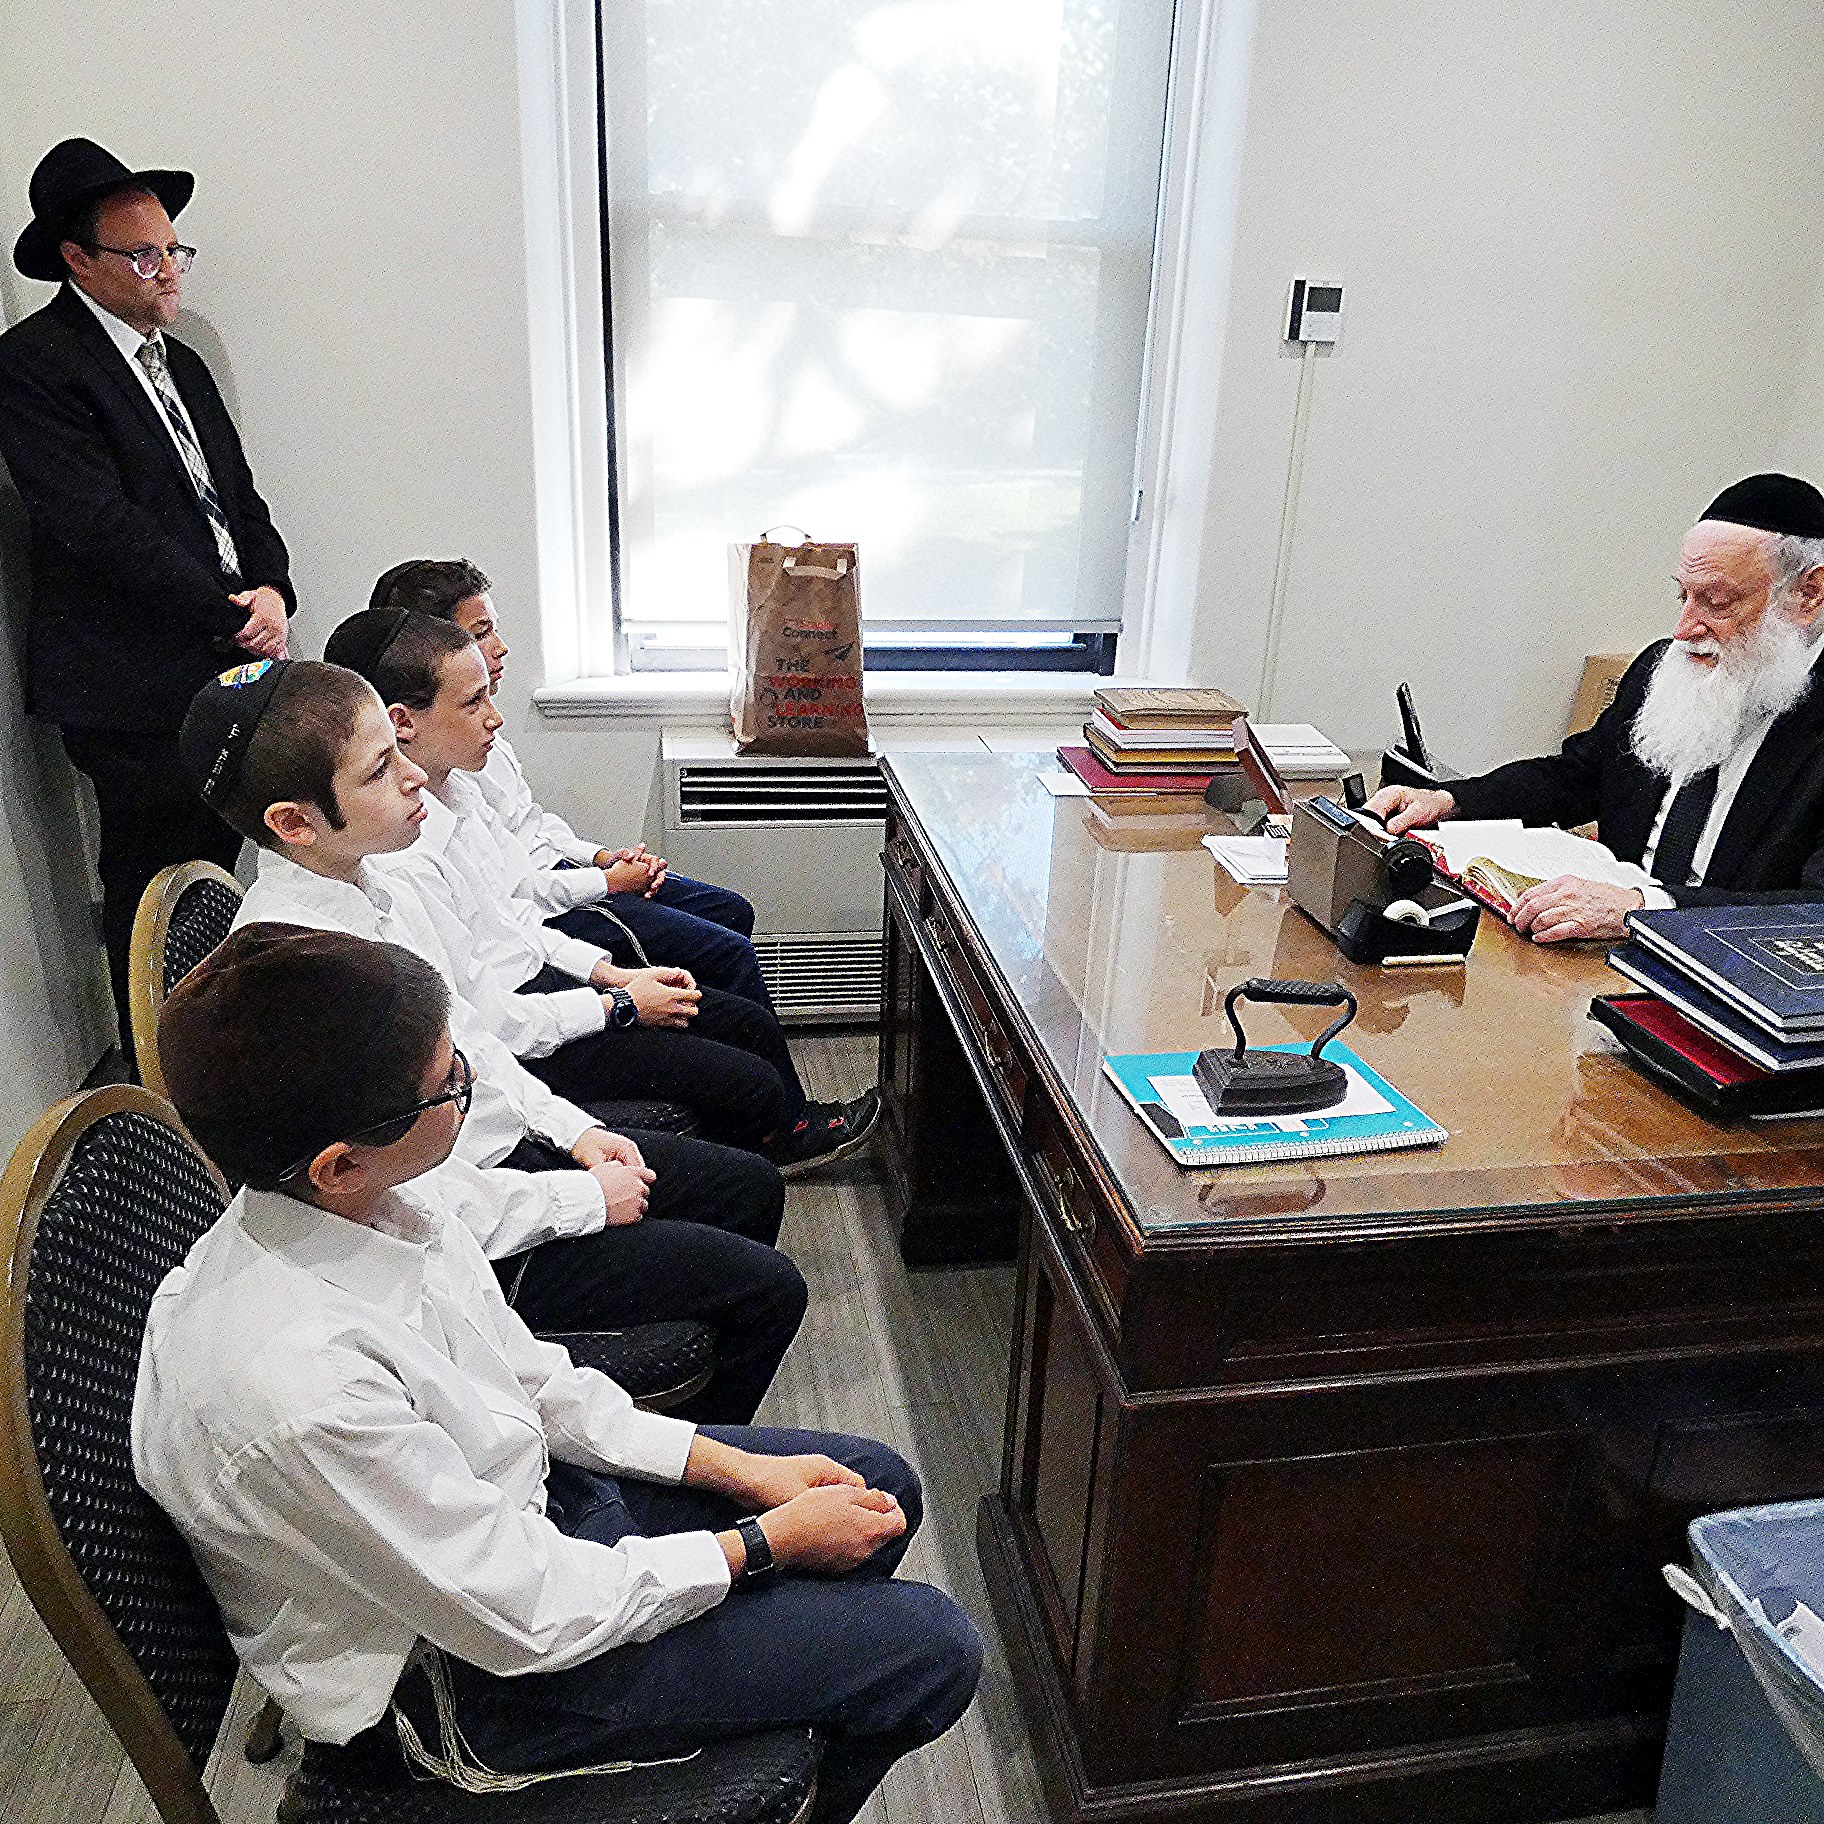 Meeting the Rosh Yeshiva